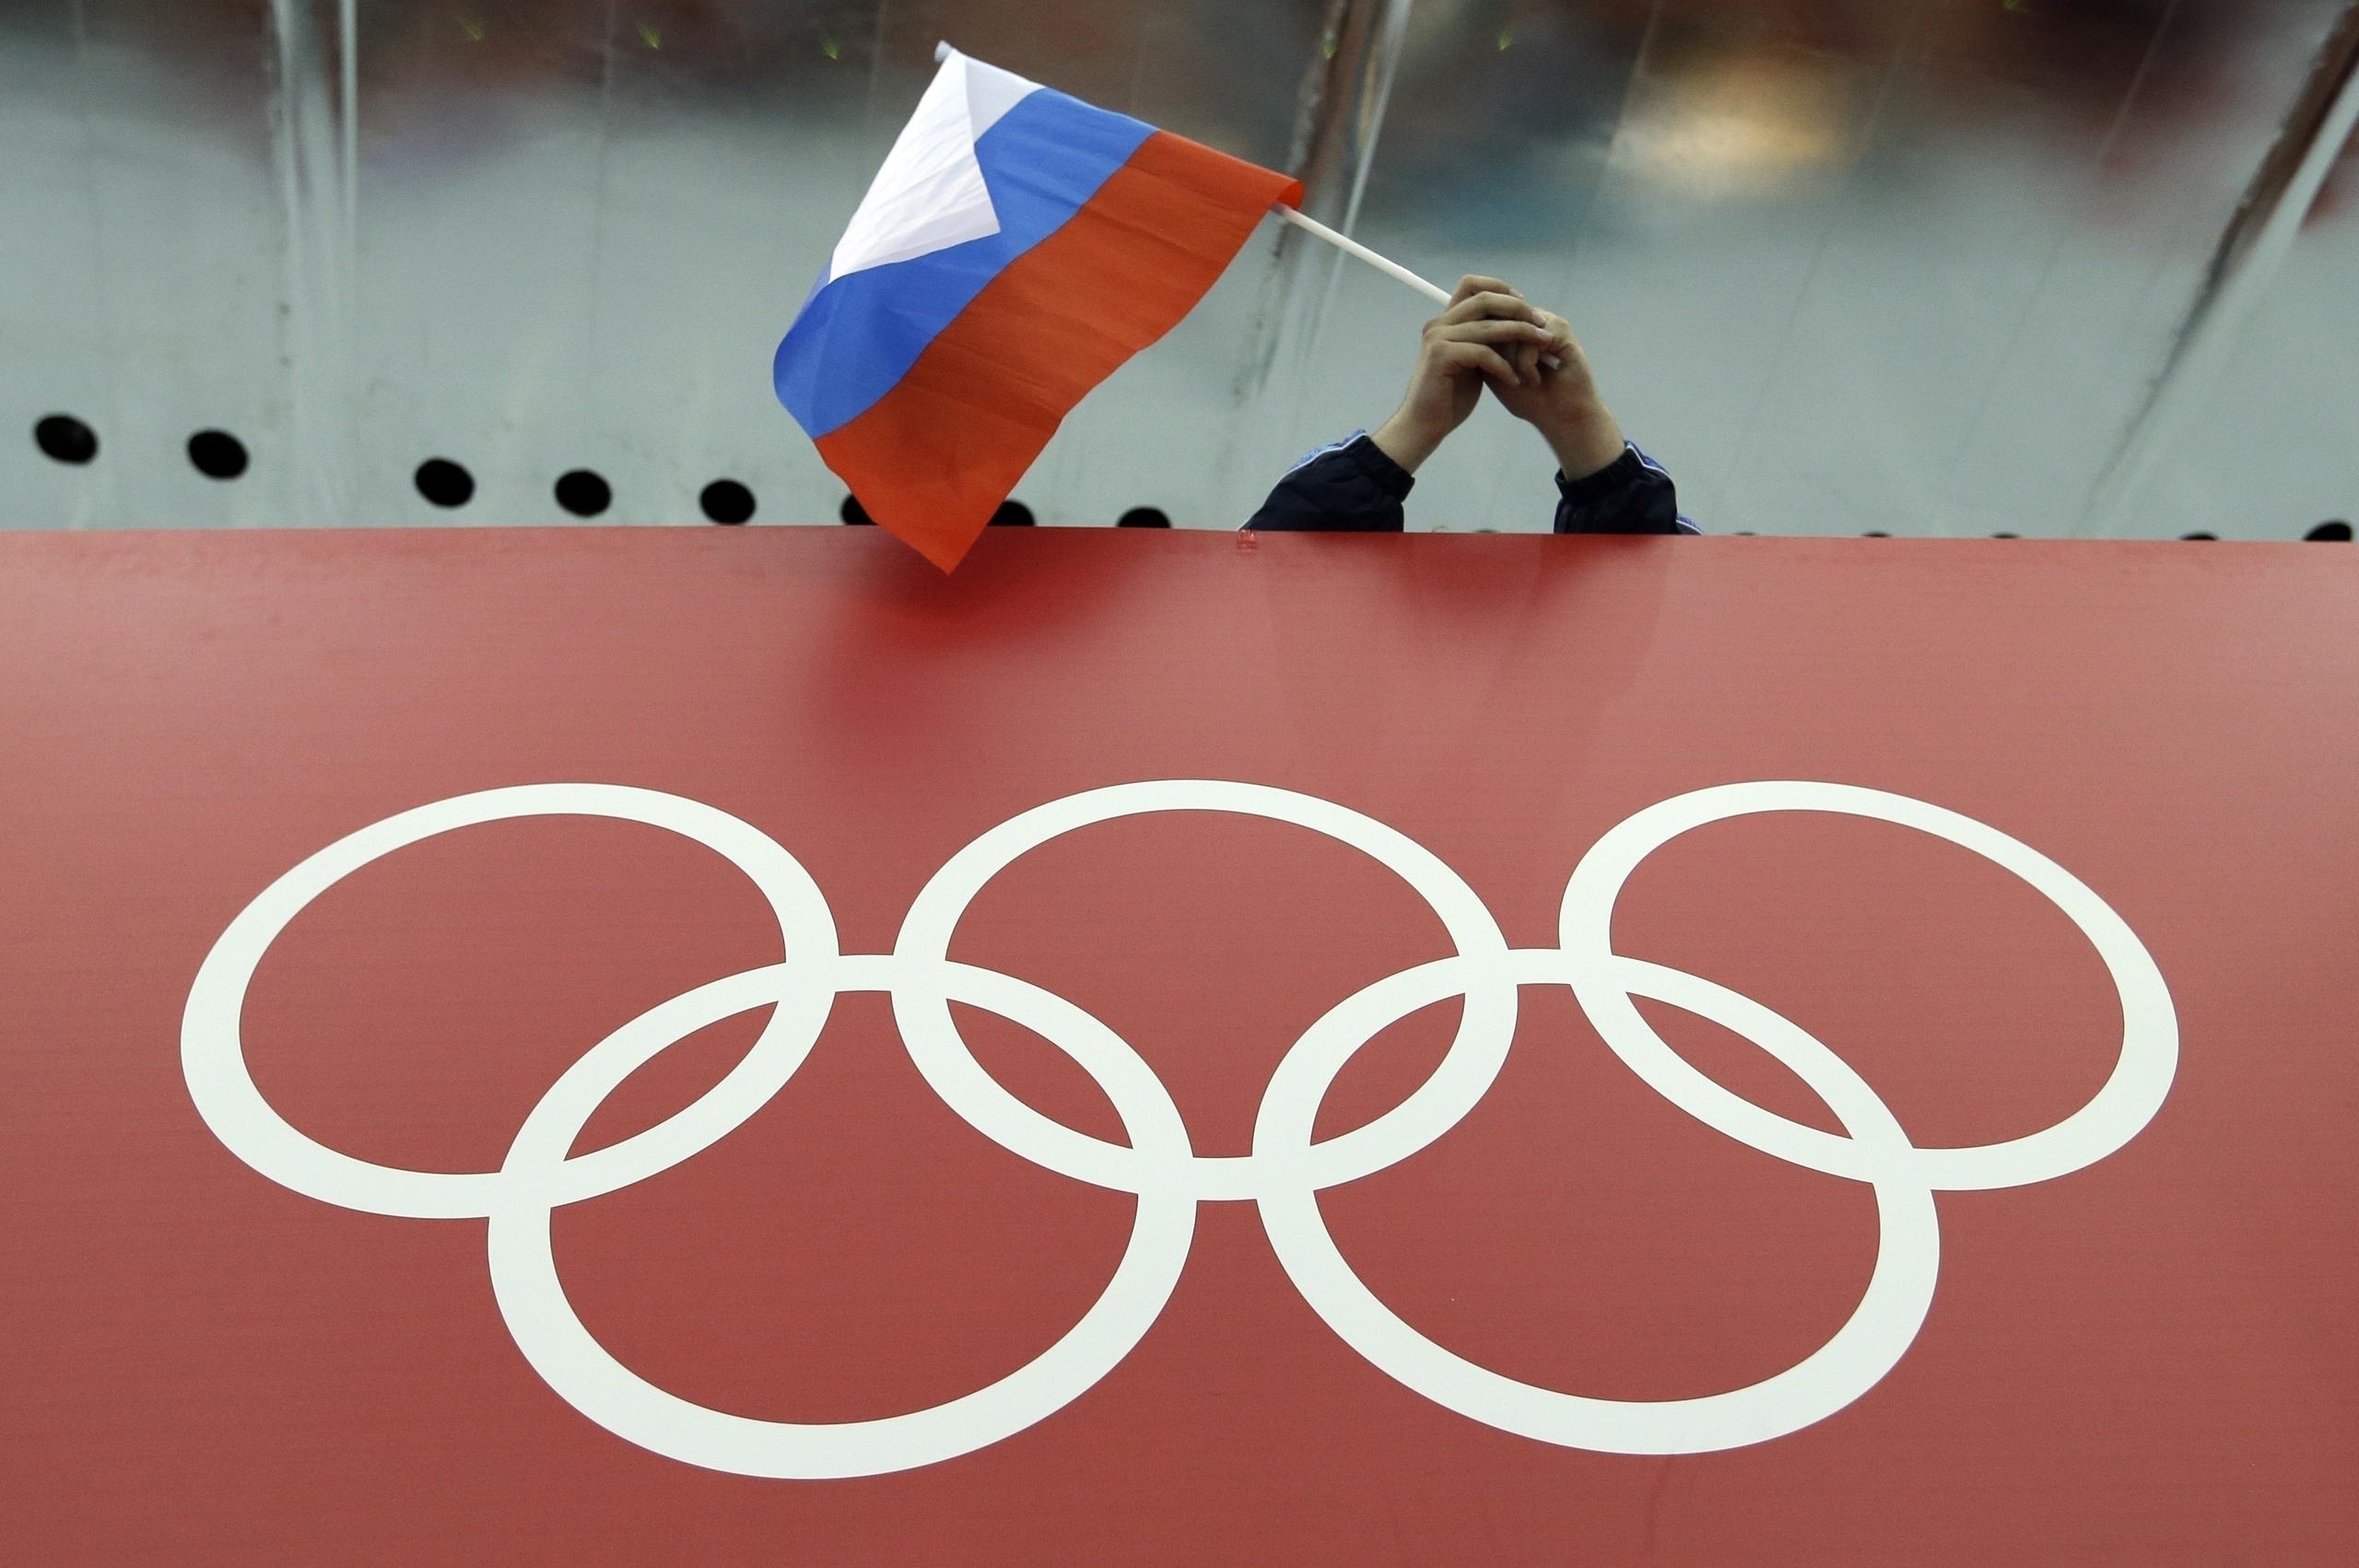 La posible participación de atletas rusos y bielorrusos en los Juegos París 2024 ya ha generado llamados a boicotear dicha Olimpiada.